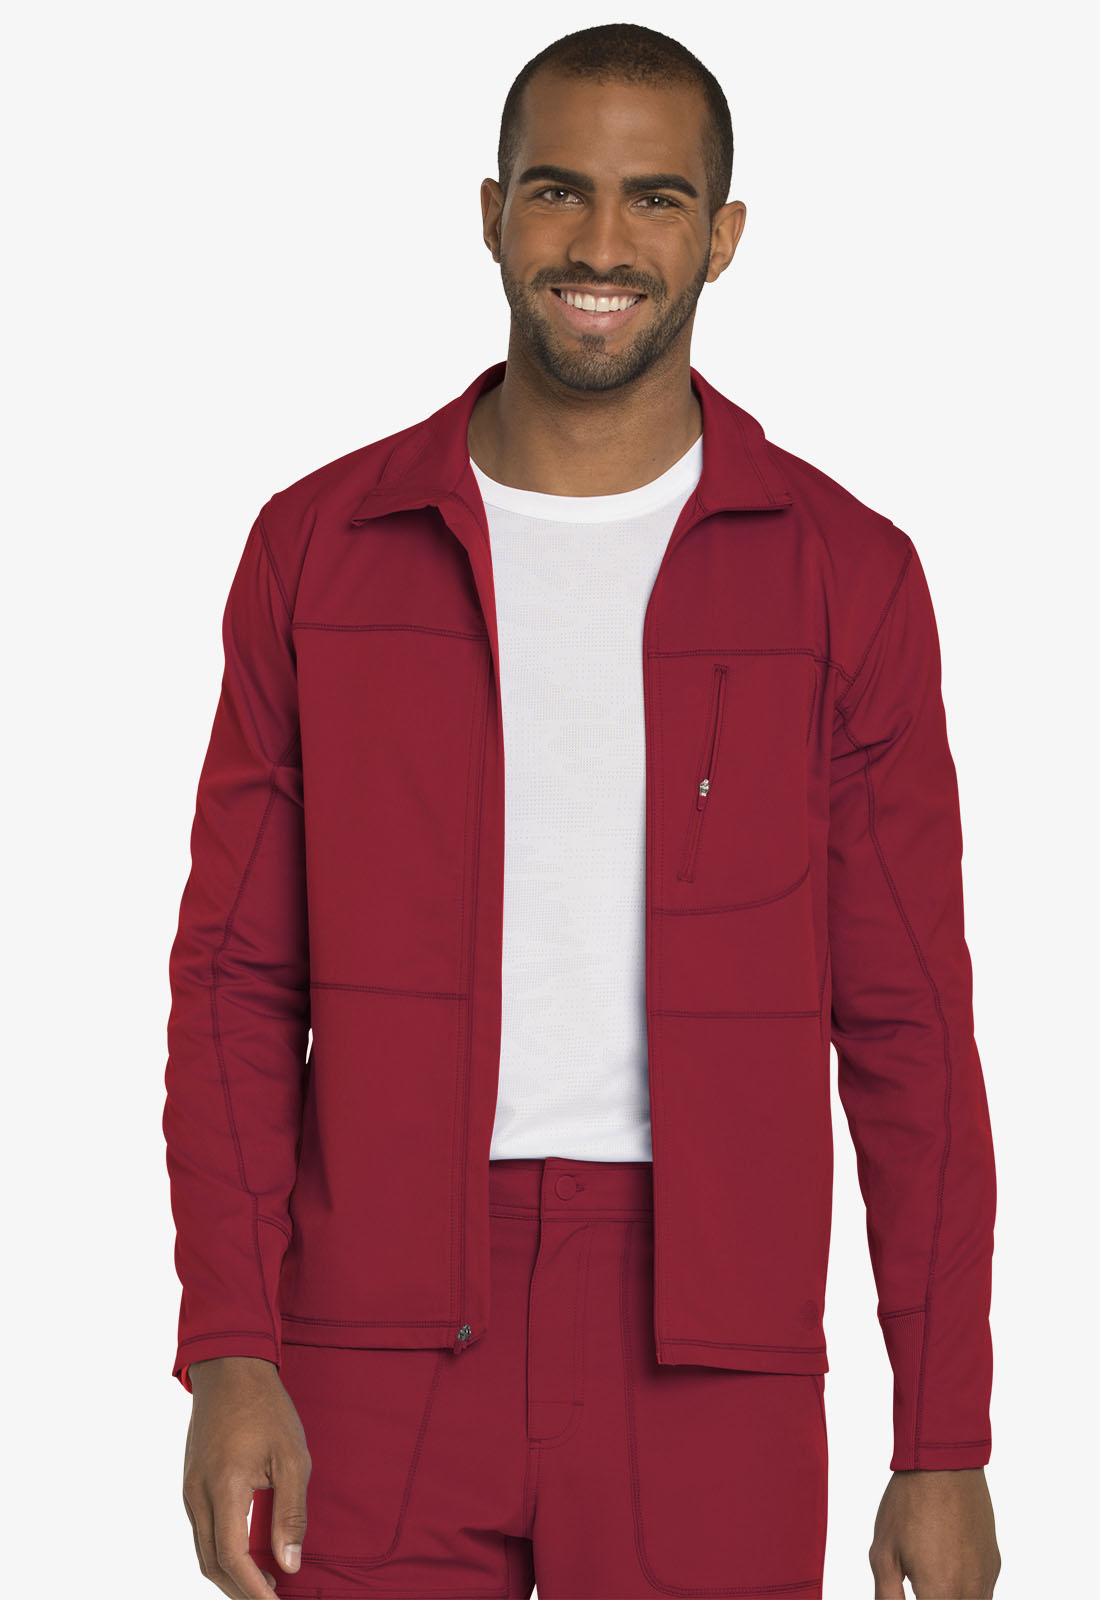 Dickies Dickies Dynamix Zip Warm-up Jacket in Red from Dickies Medical